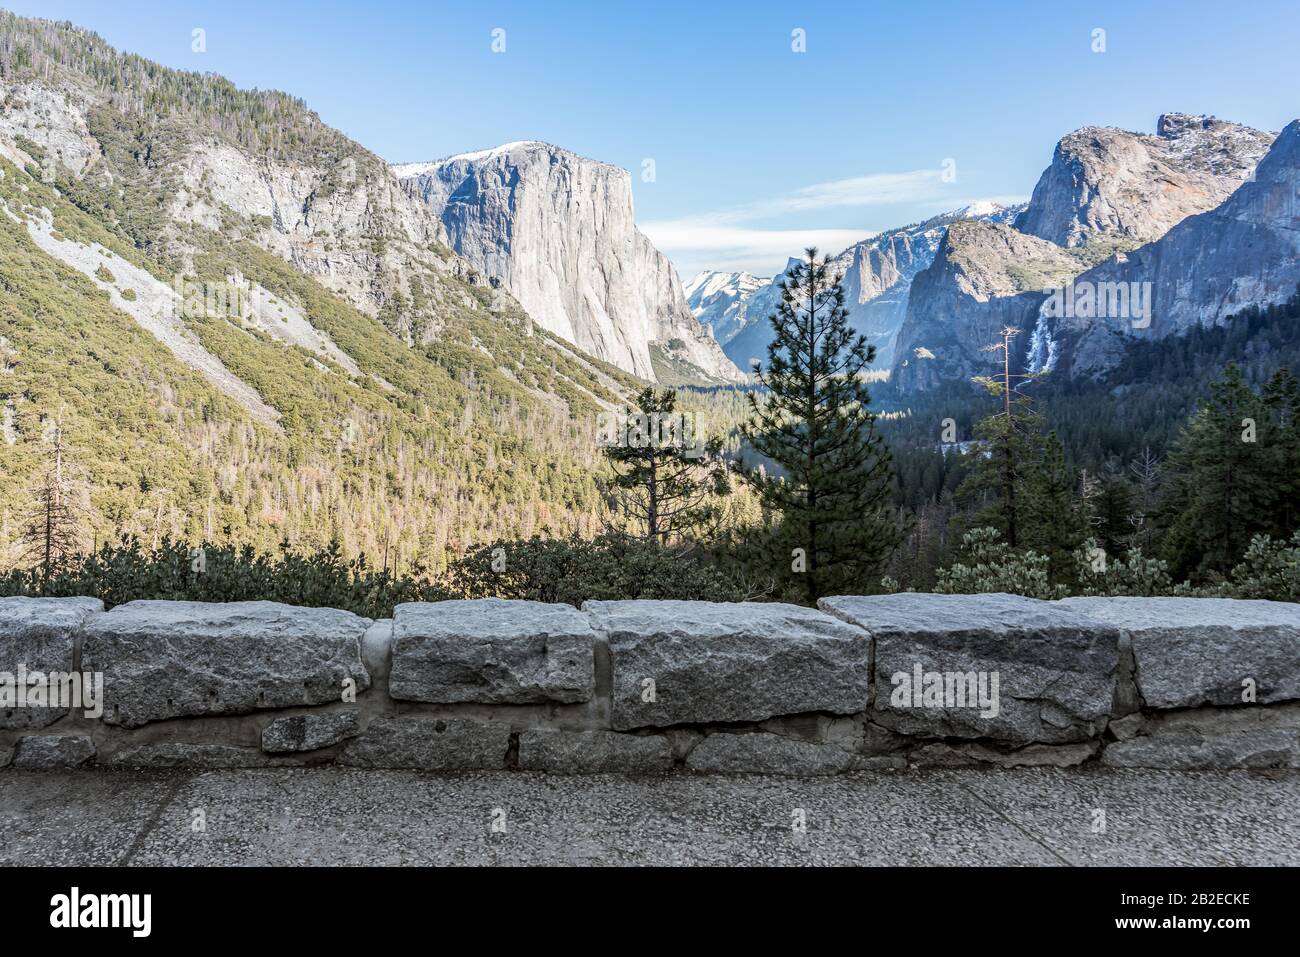 Yosemite National Park Valley, El Capitan Et Bridalveil Fallfrom Tunnel View En Décembre 2019, Mariposa County, Sierra Nevada De L'Ouest Montagnes, Cali Banque D'Images